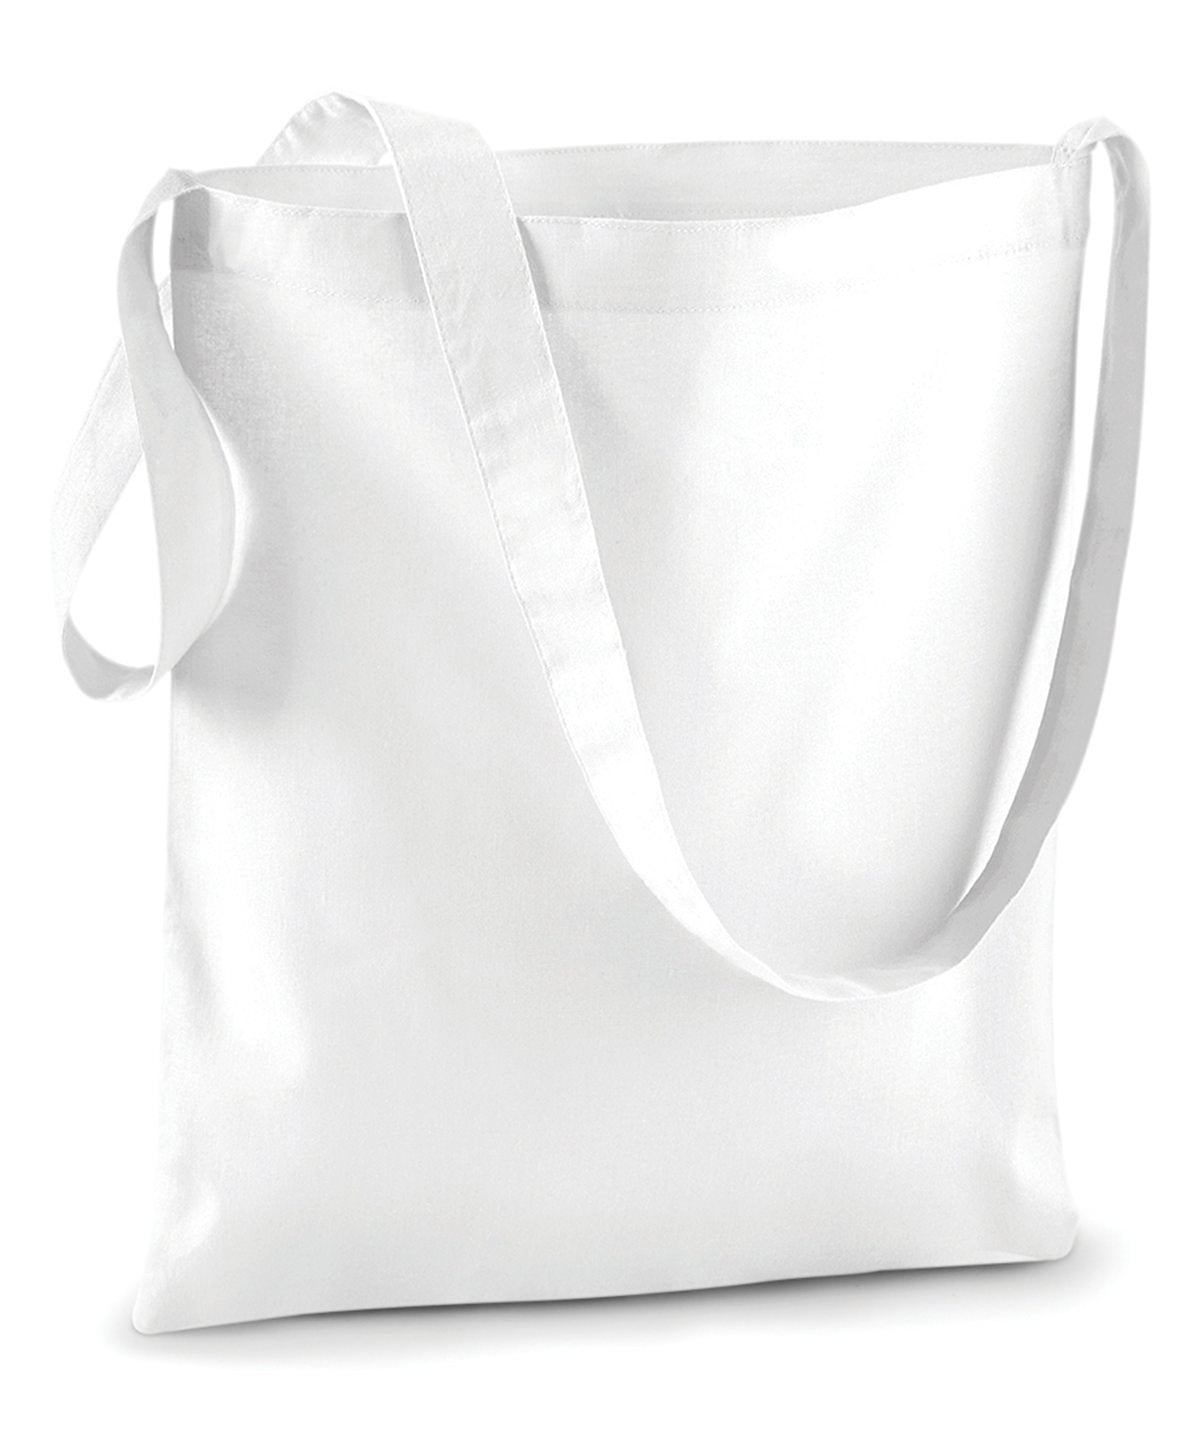 Töskur - Sling Bag For Life